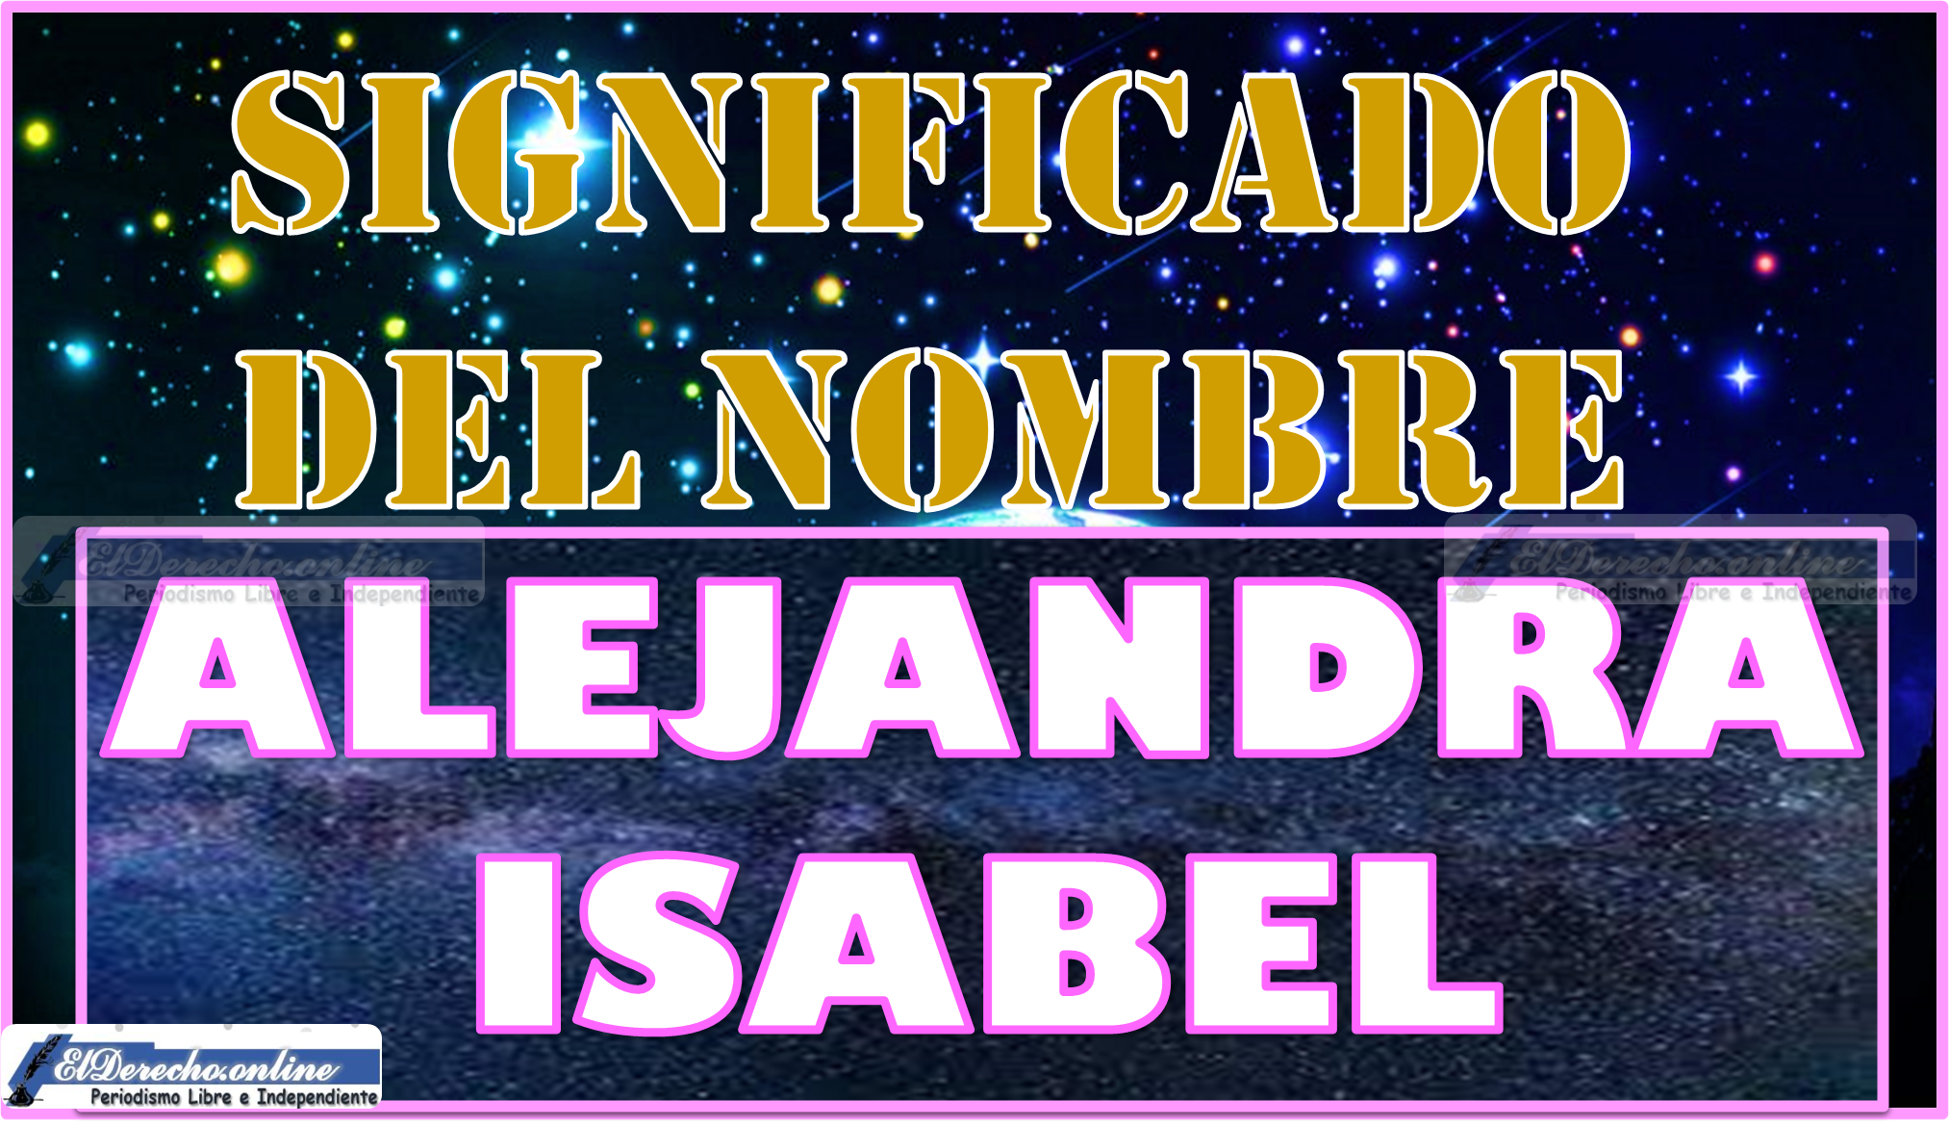 Significado del nombre Alejandra Isabel, su origen y más